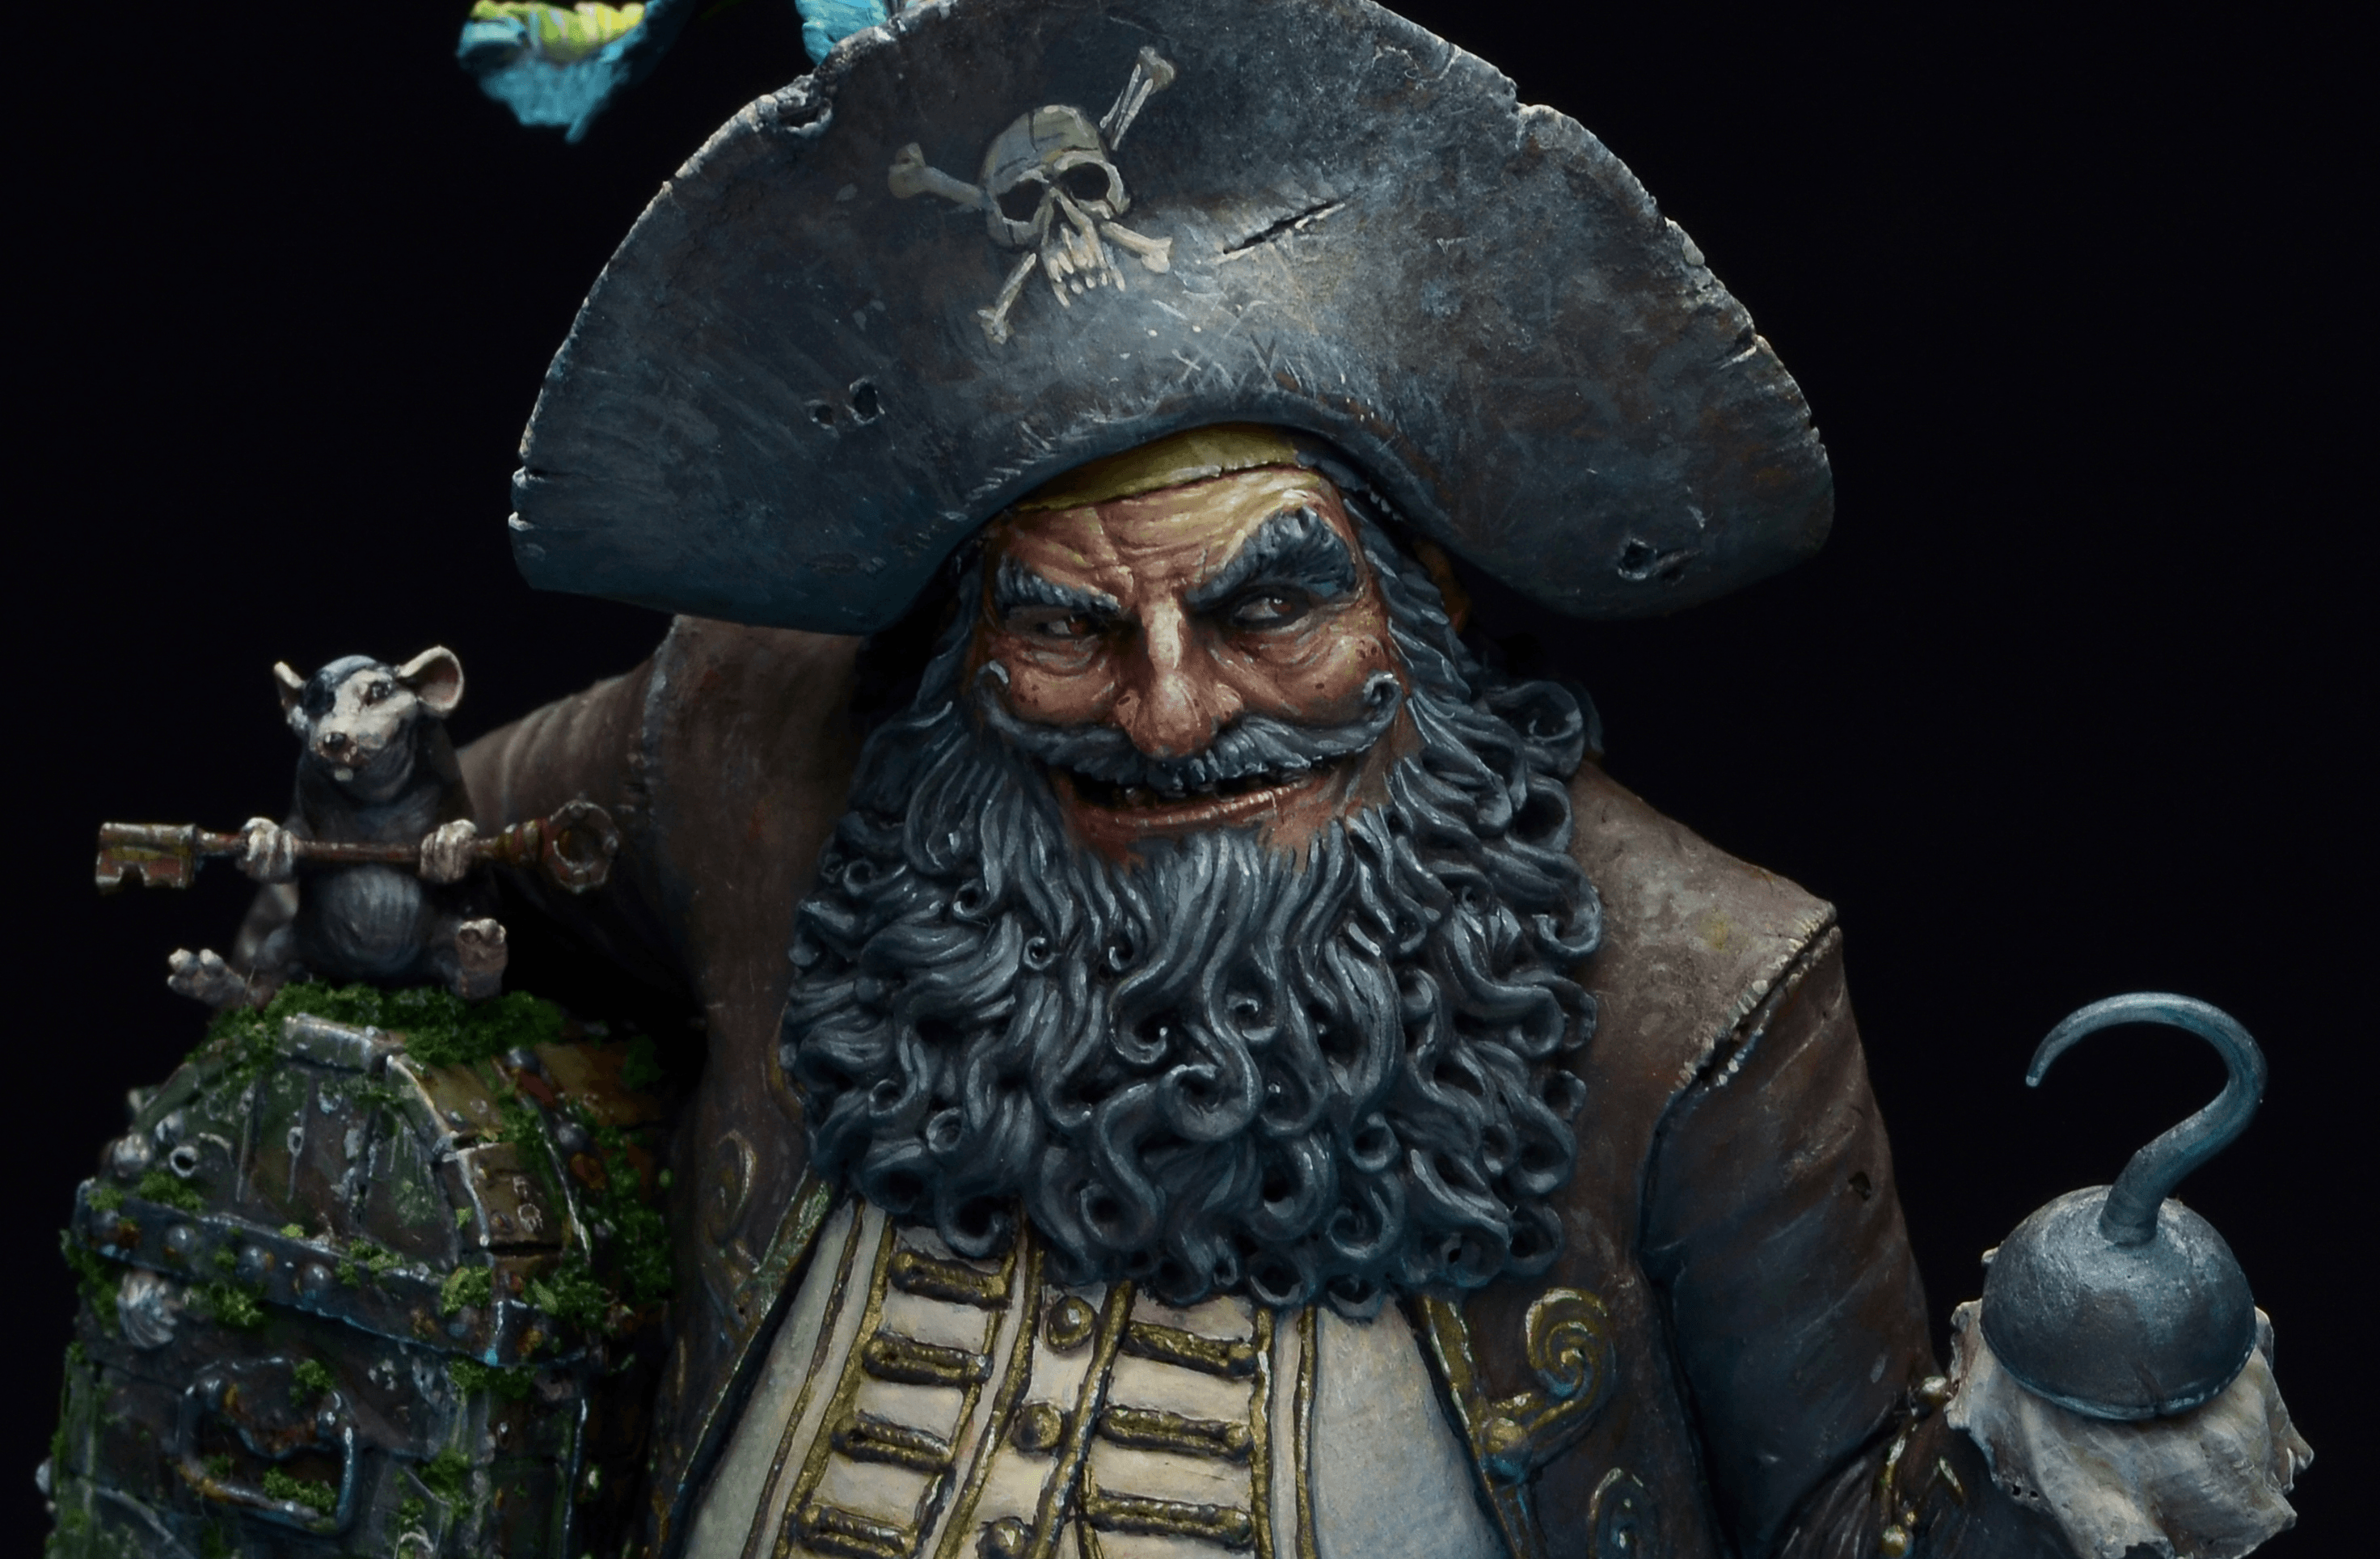 #04 A Pirate's smile